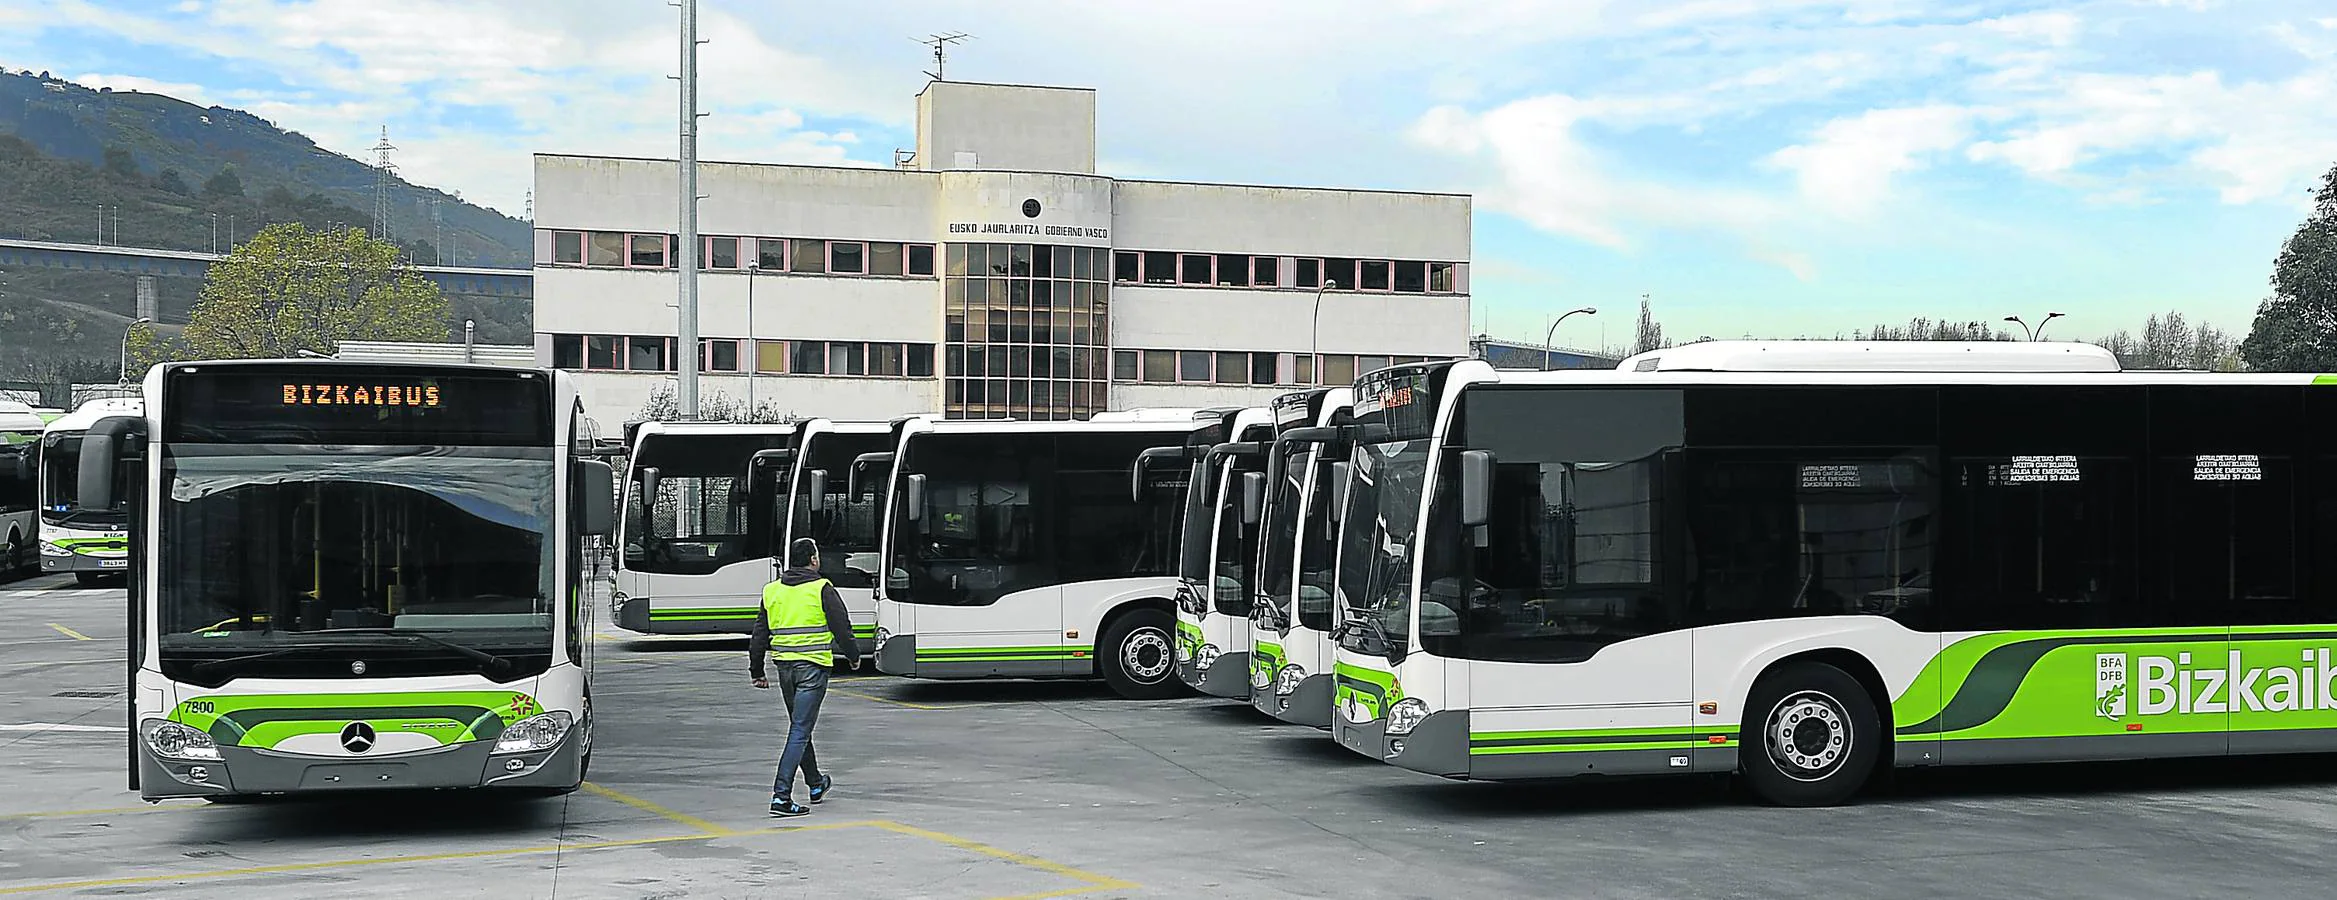 Imagen tomada ayer de un buen número de los nuevos autobuses, que han llegado ya a las cocheras de Aparkabisa.